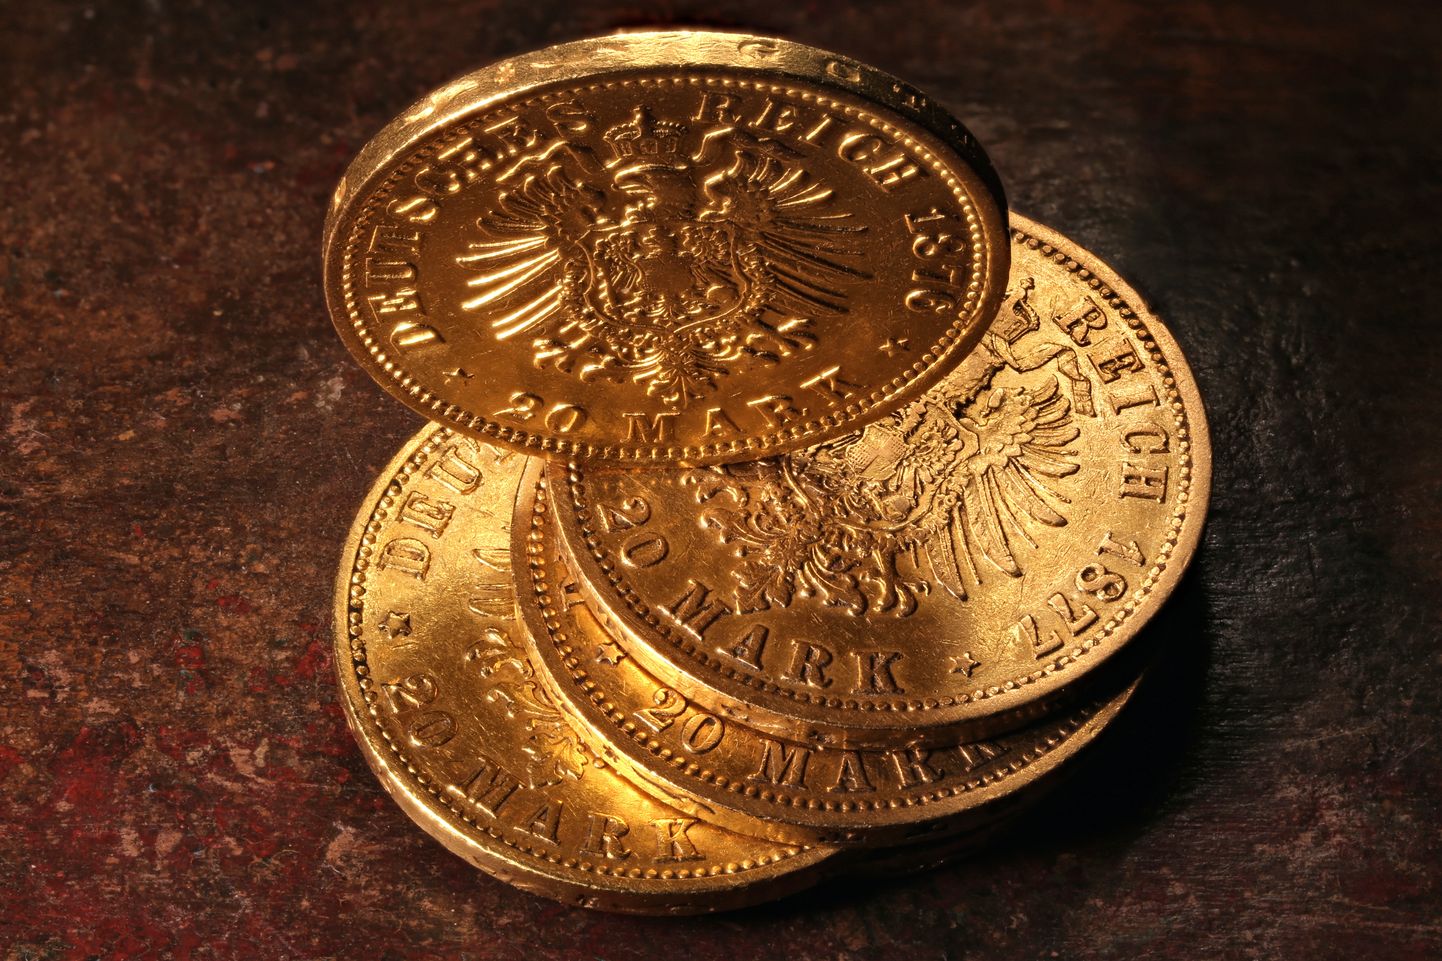 Saksa keisririigi 20 marka on üks kuulsamaid saksa münte, mis lasti käibele 1871. aastal pärast Saksamaa ühendamist rahvusriigiks. Oma ajaloolise tähenduse tõttu on see investorite seas äärmiselt hinnatud kuldmünt.